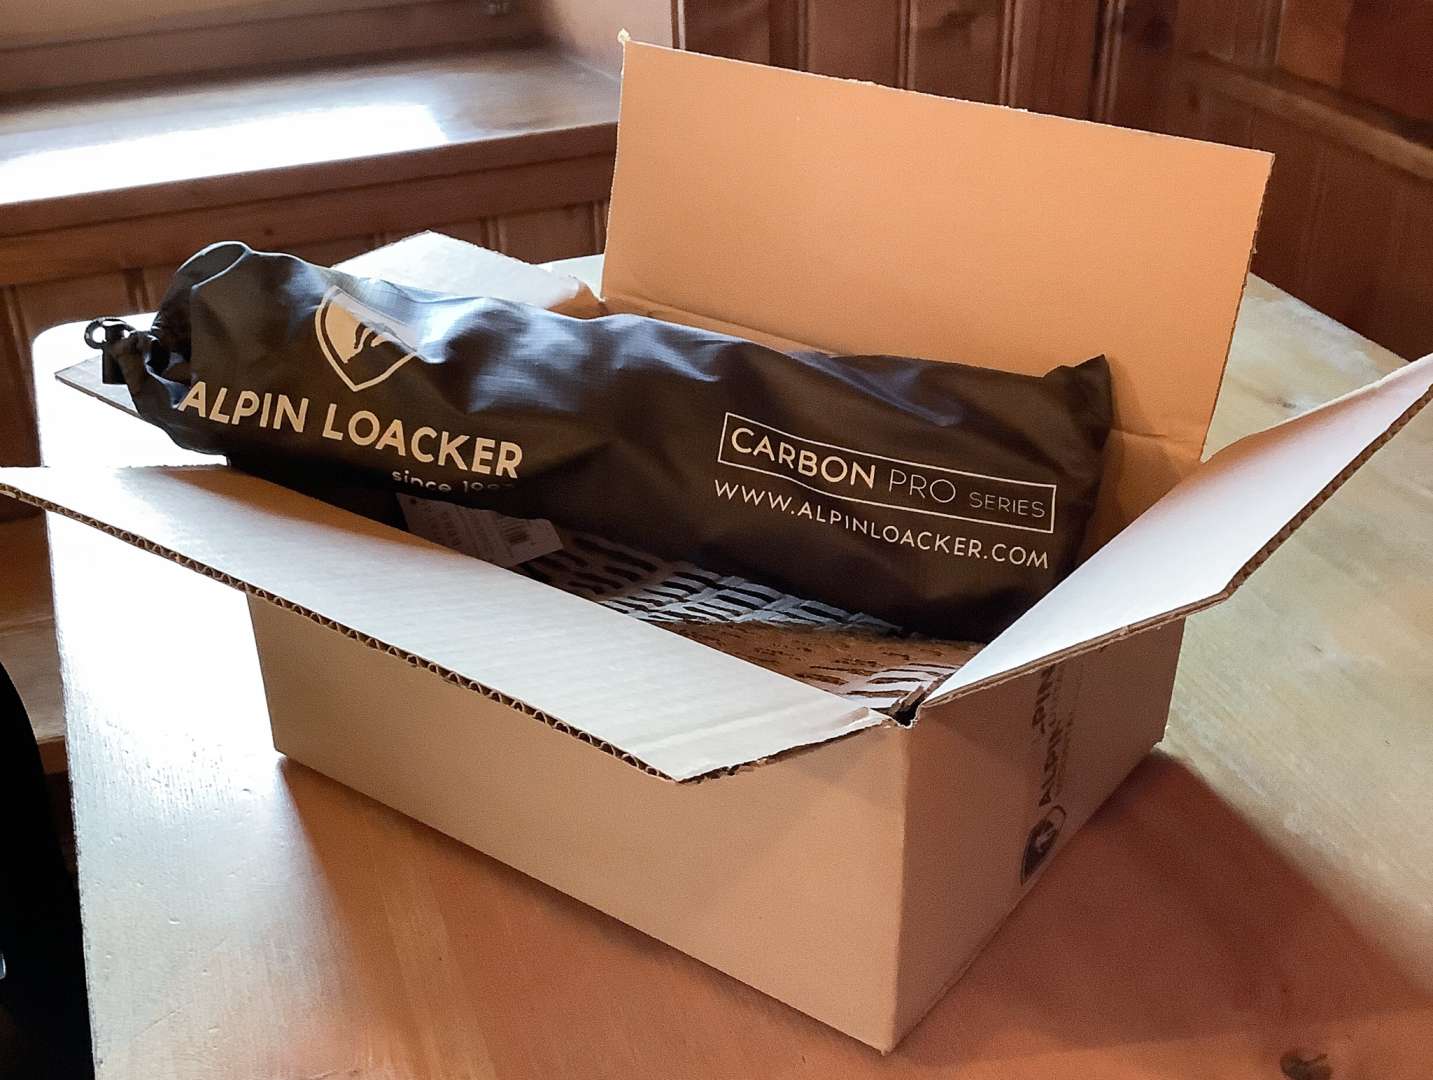 Ein geöffneter Karton auf einem Holztisch, in dem eine schwarze Tasche liegt. Diese trägt in weiß die Aufschrift "Alpin Loacker Caron Pro Series" und die Web-Adresse www.alpinloacker.com